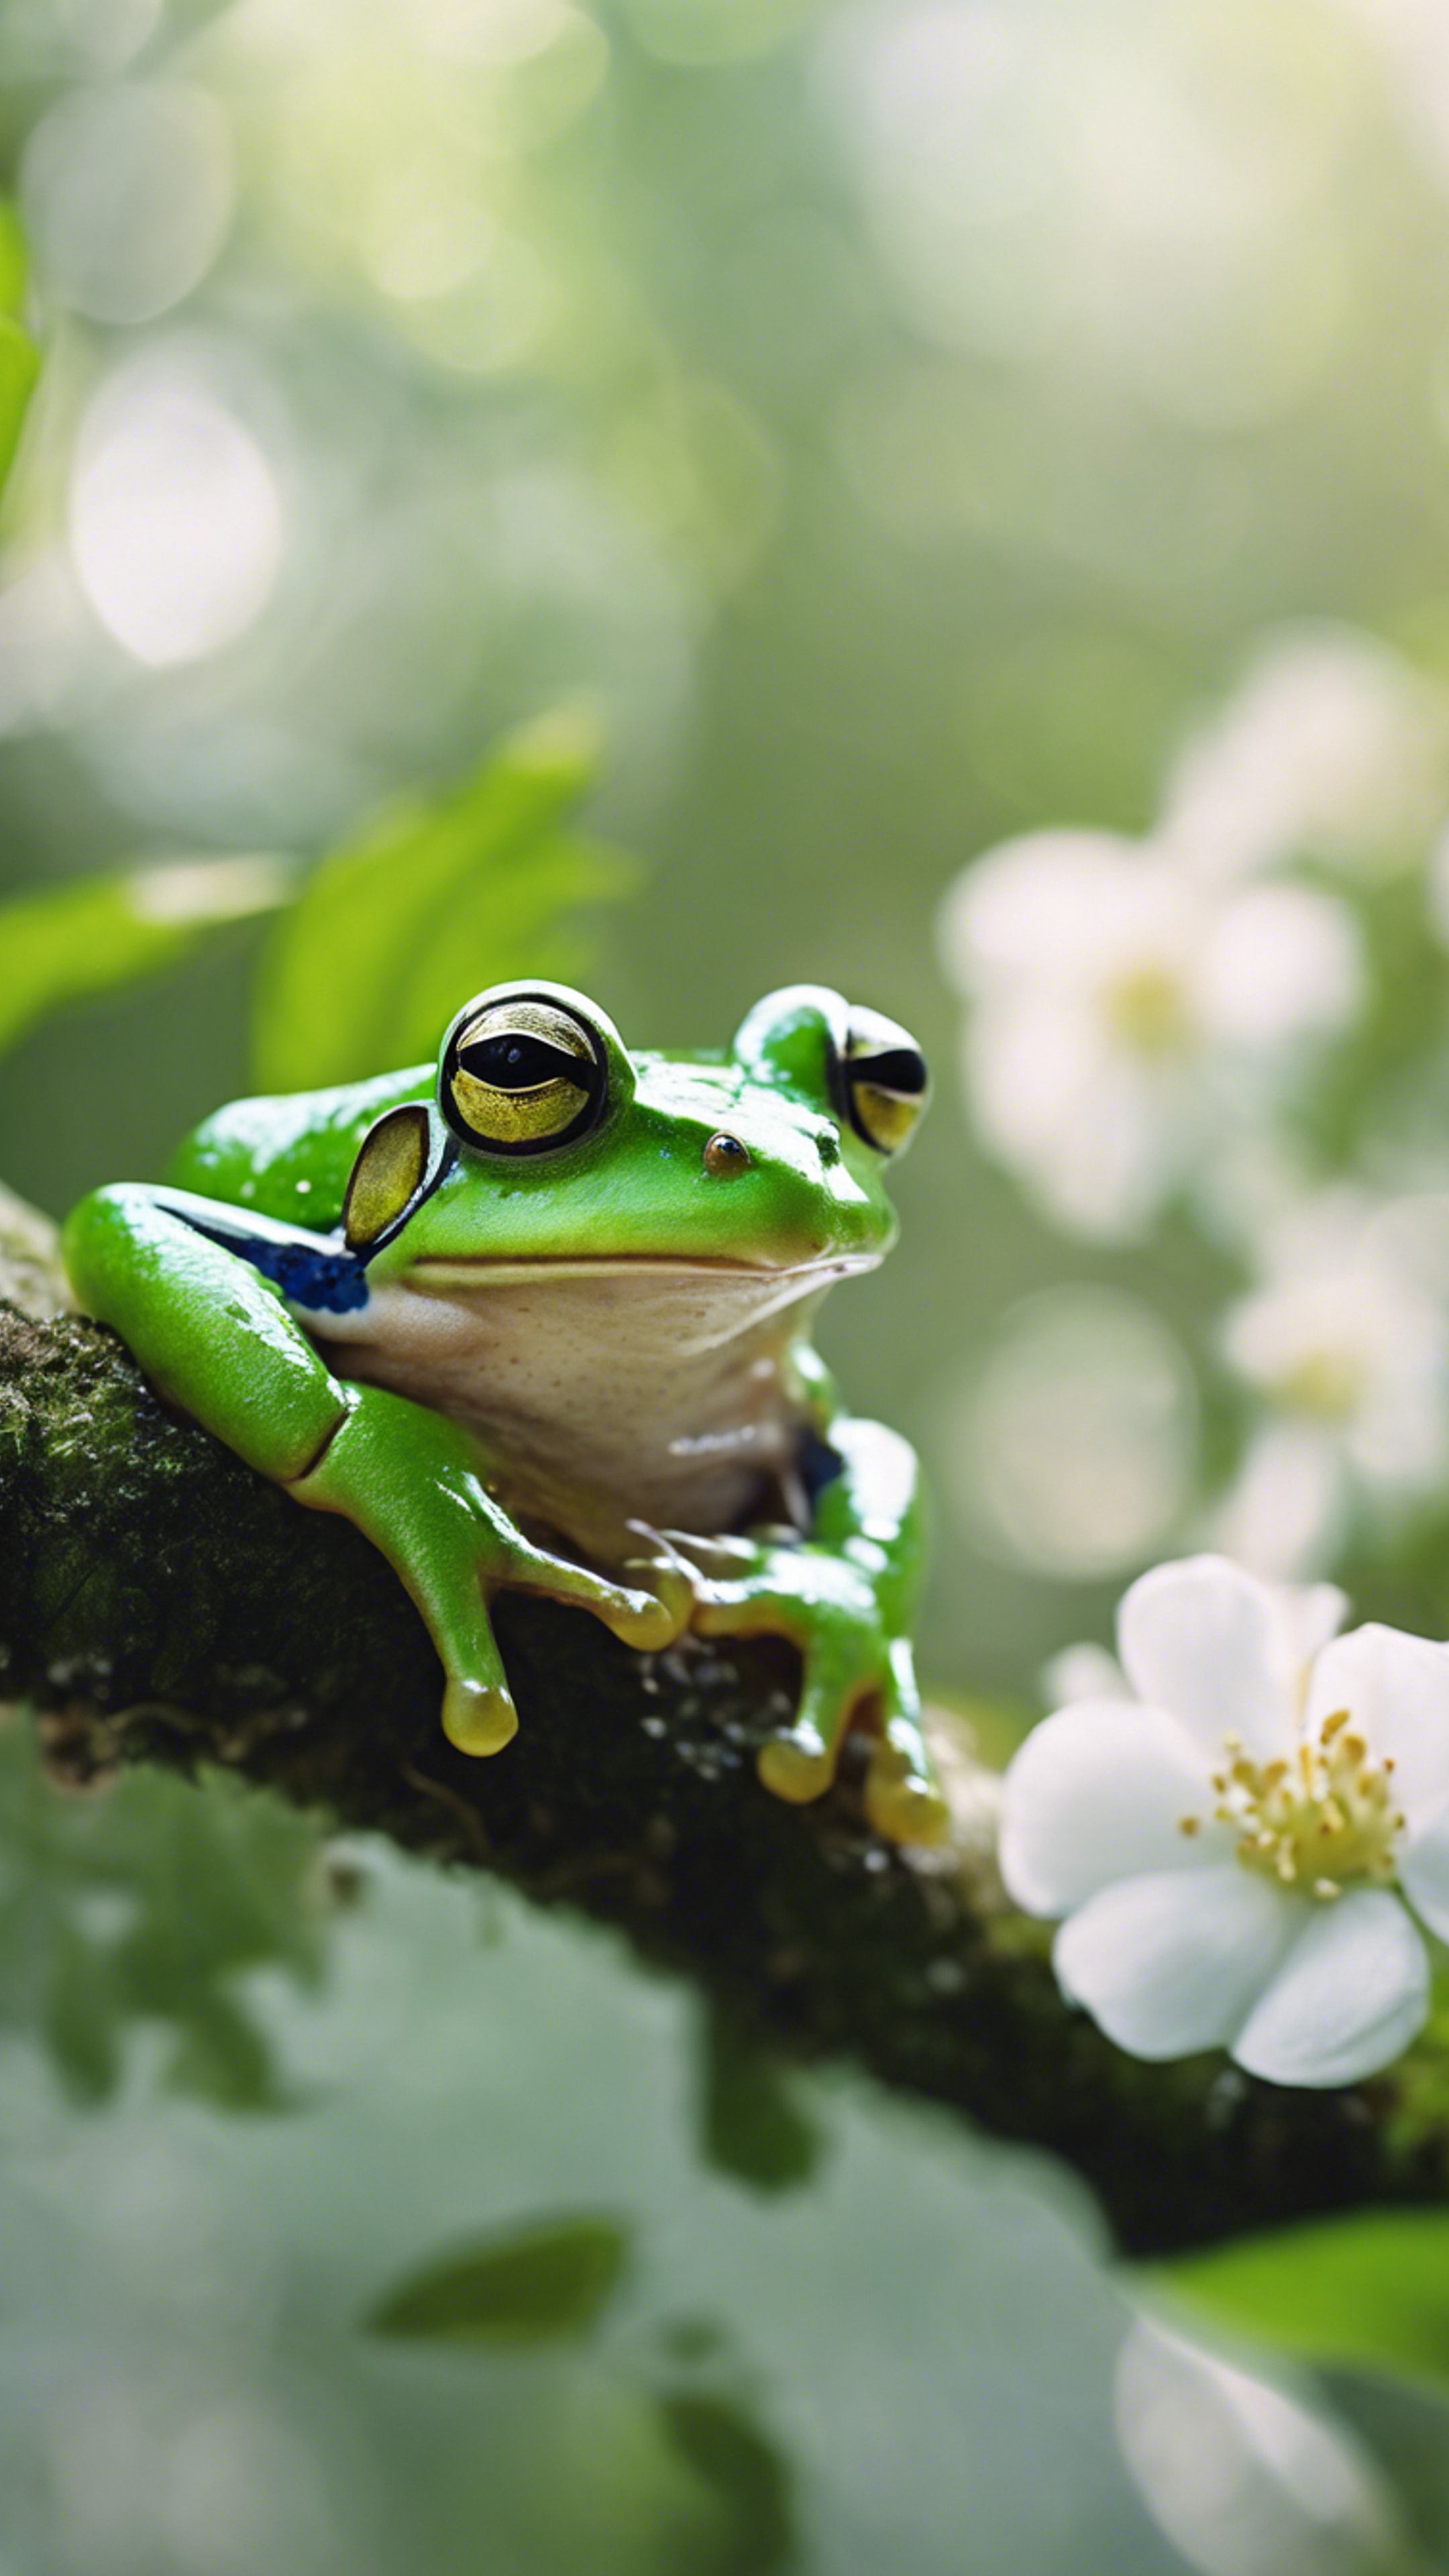 A bright green frog on a white blossom in the rainforest duvar kağıdı[dcf59f9895044df59e99]